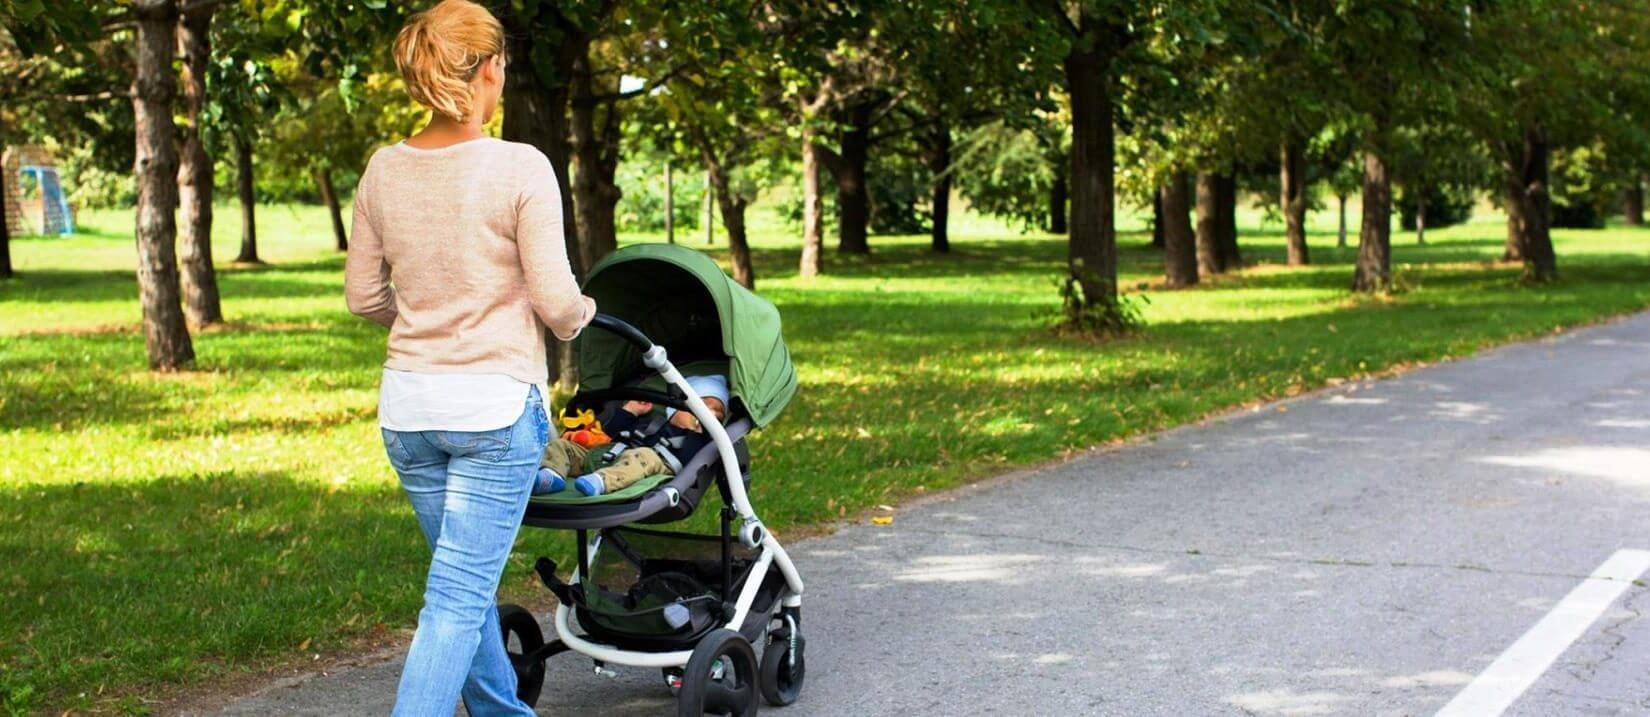 Πρώτη βόλτα με το νεογέννητο μωρό σας! Συμβουλές για σωστή προετοιμασία